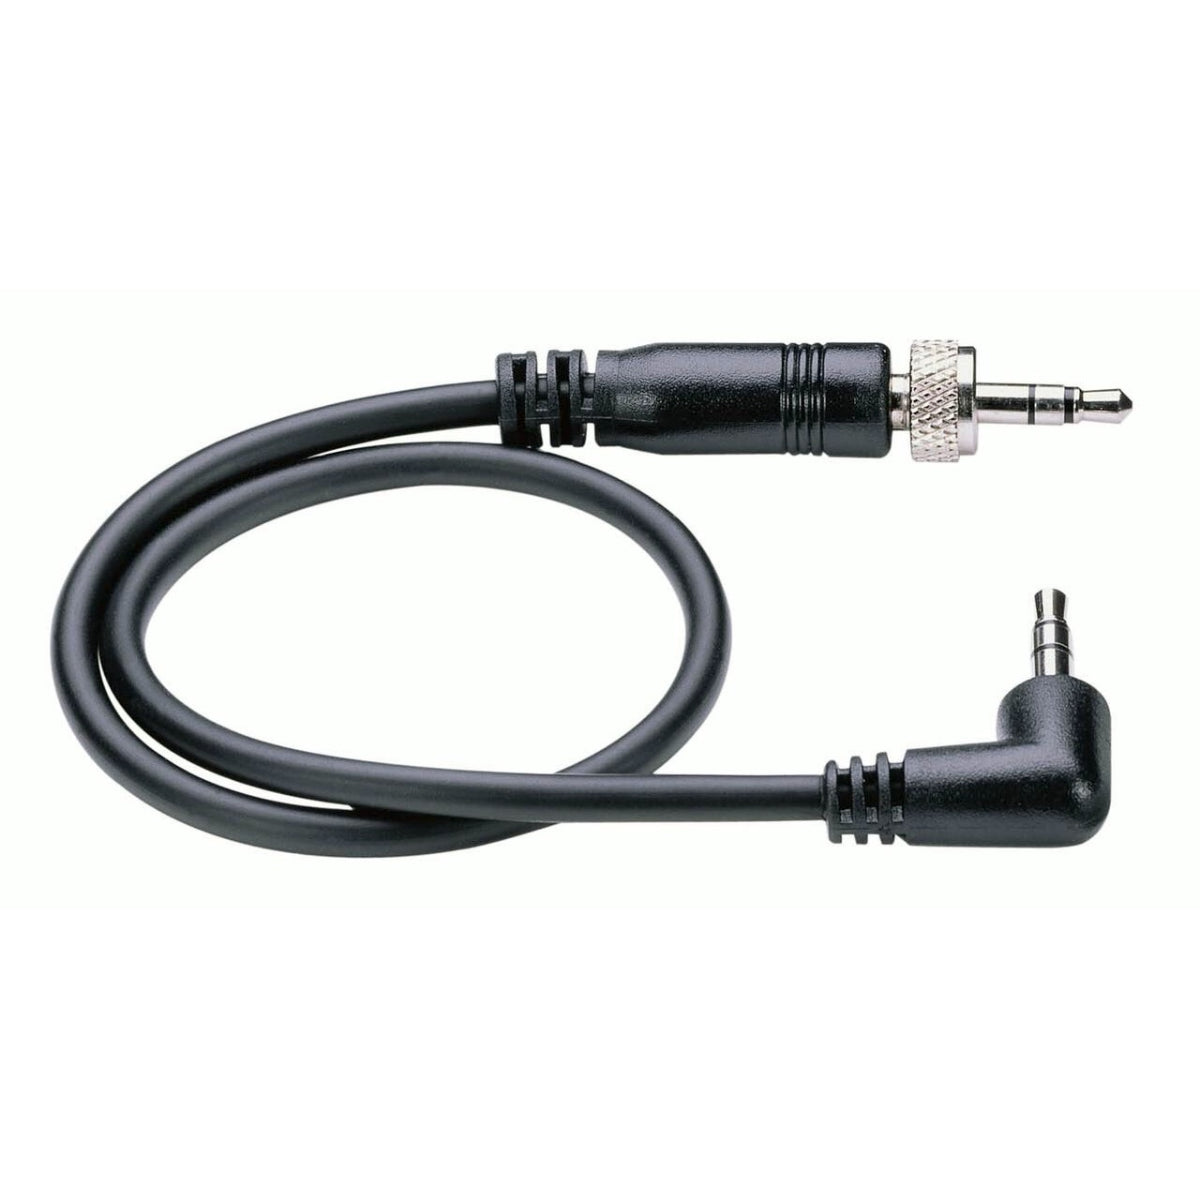 Sennheiser CL 1-N Line Ouput Cable, For EK 100/500/2000 to Camcorder, 3.5mm Jack